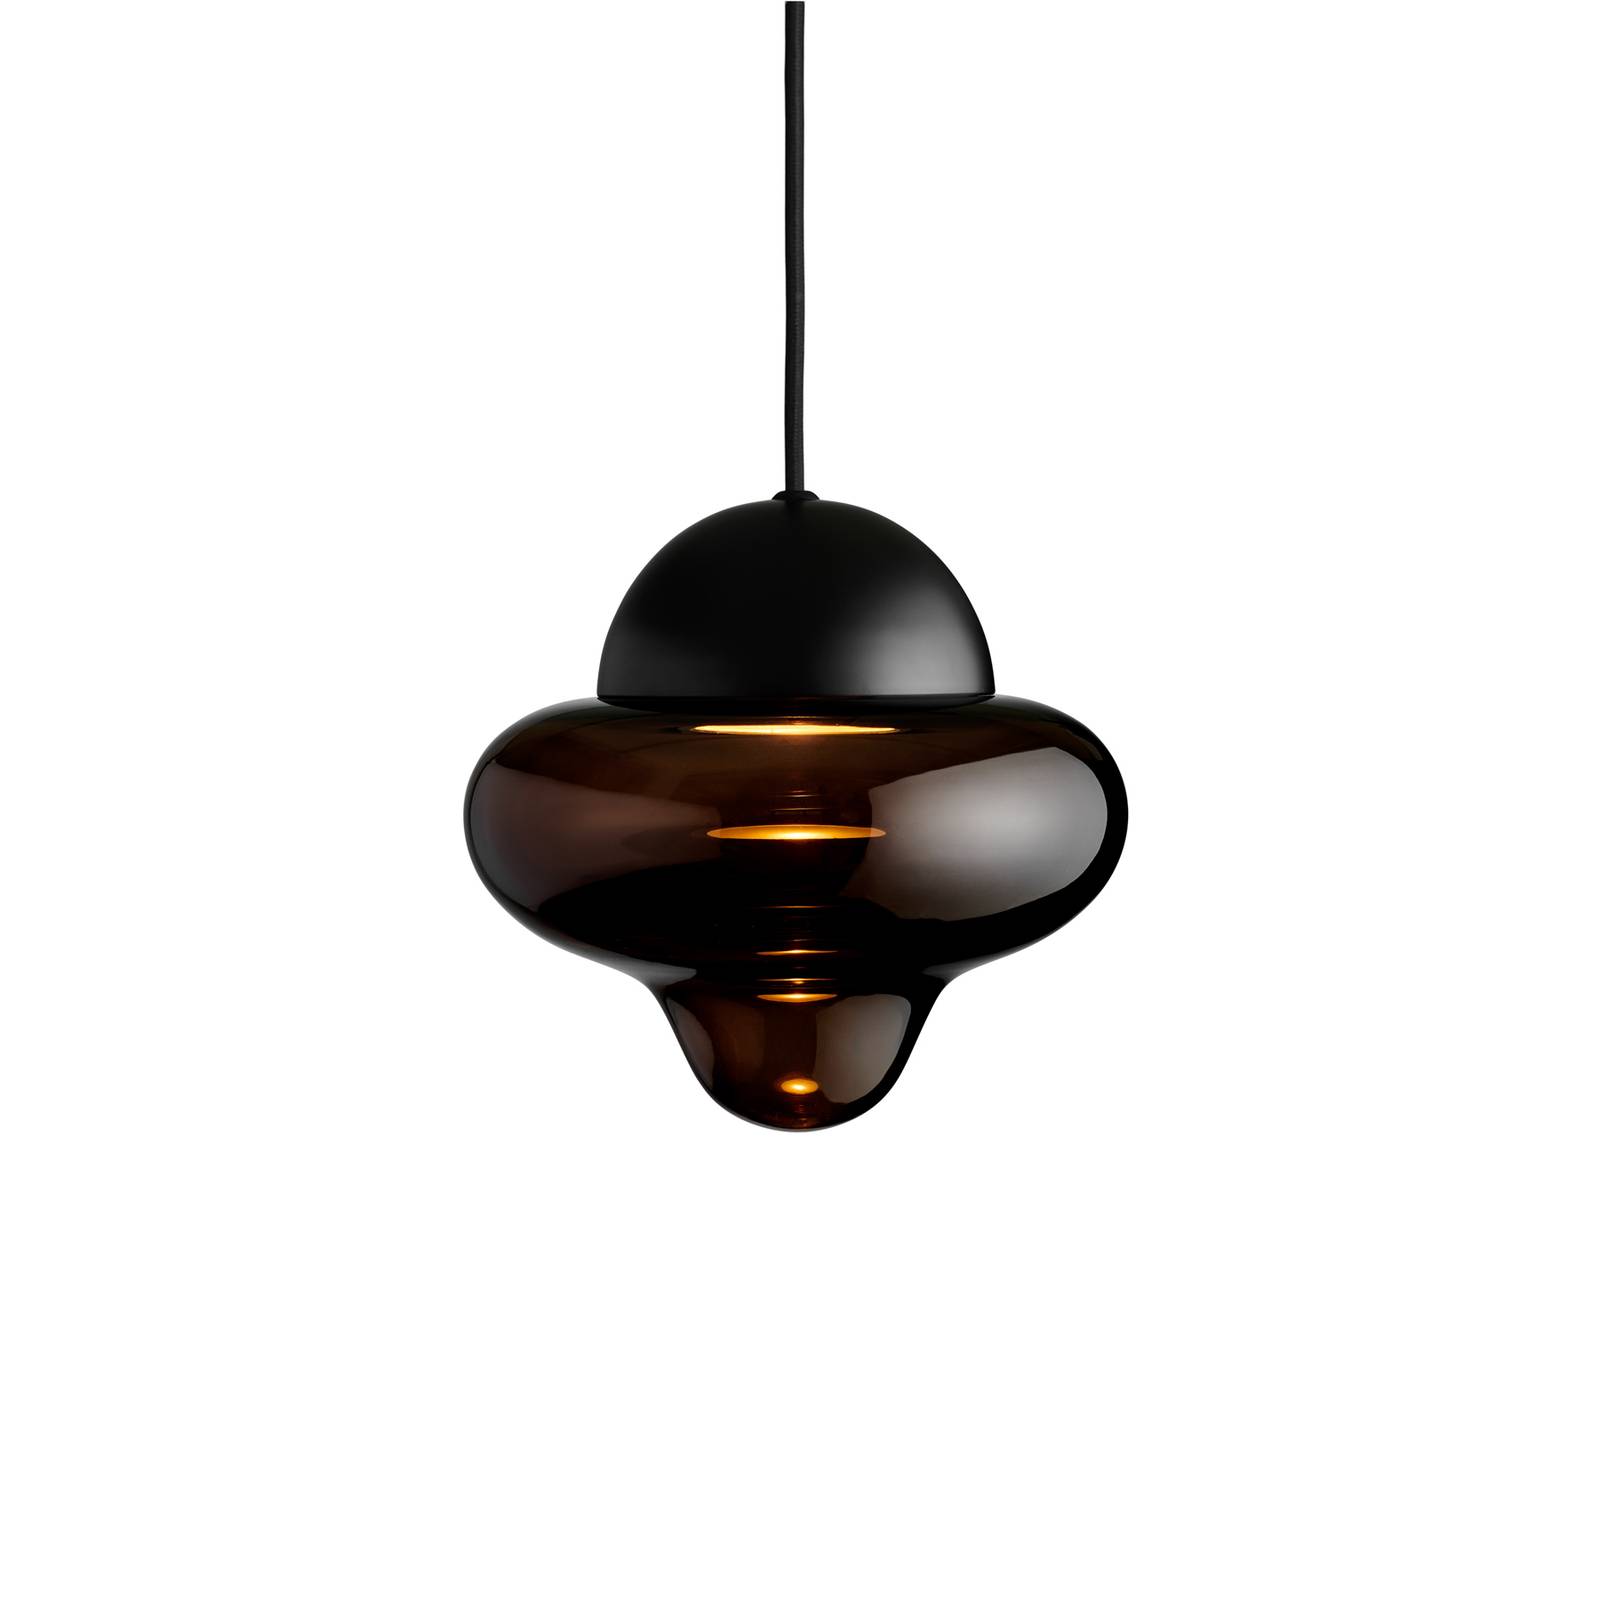 LED-Hängeleuchte Nutty, braun / schwarz, Ø 18,5 cm, Glas von DESIGN BY US